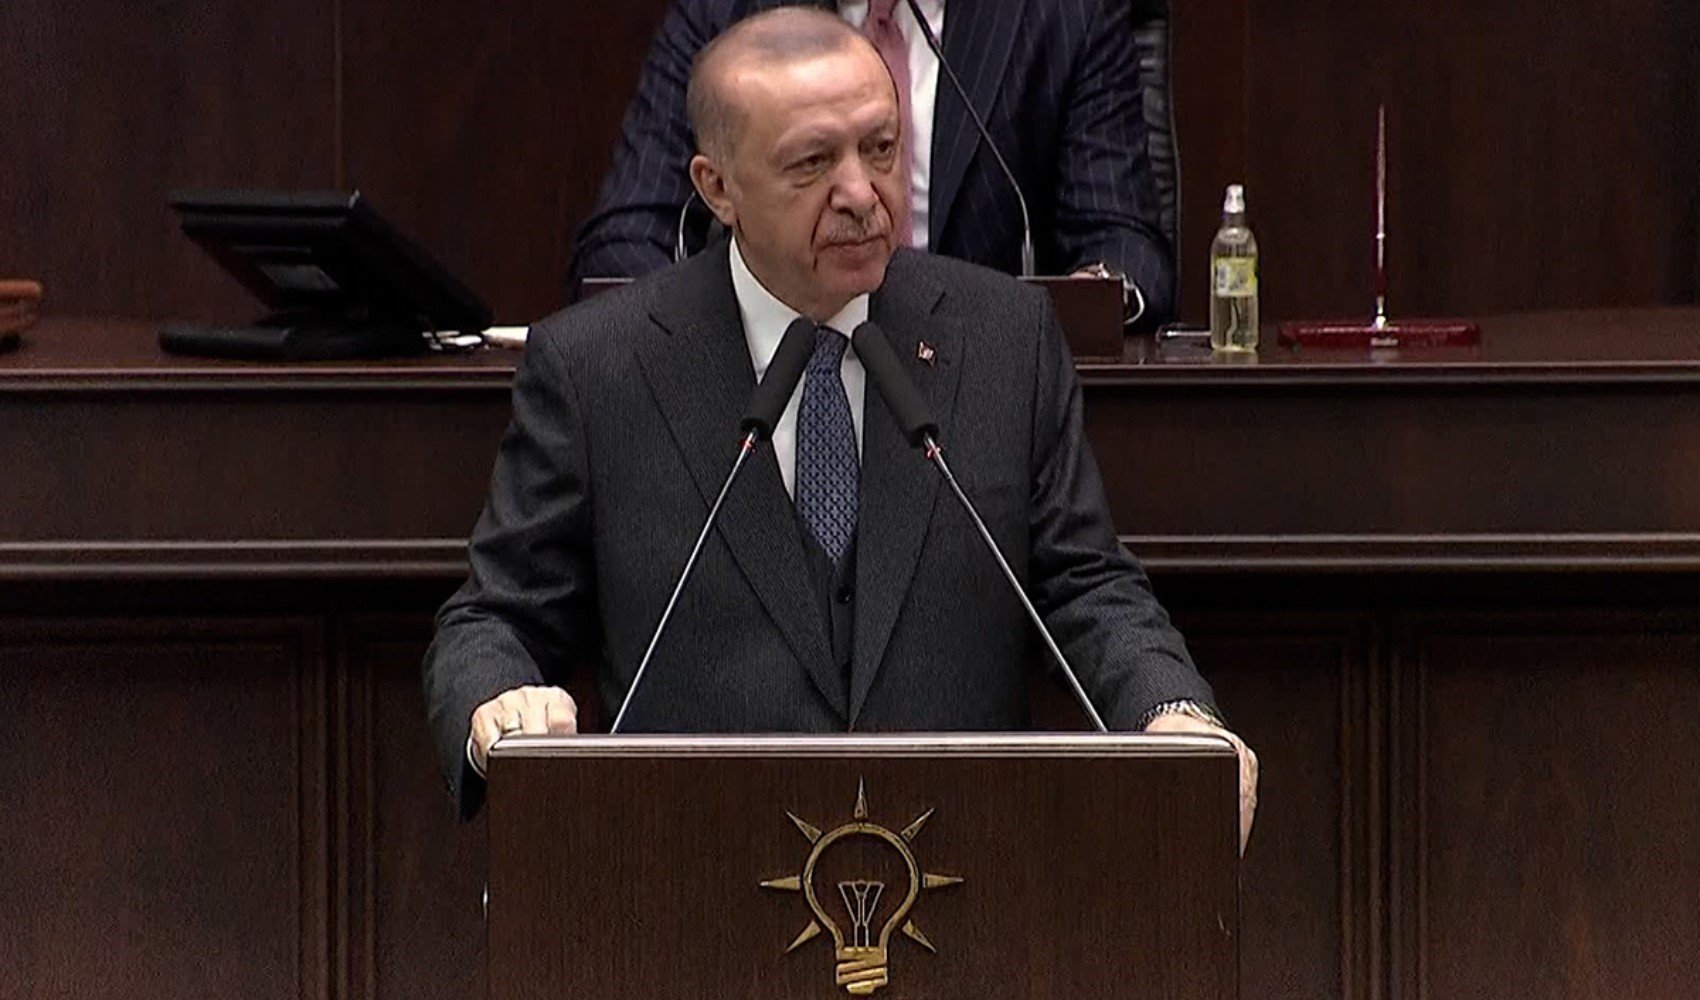 Cumhurbaşkanı Erdoğan partisinin grup toplantısında konuştu: 'Kimse bize merhamet dersi vermesin'